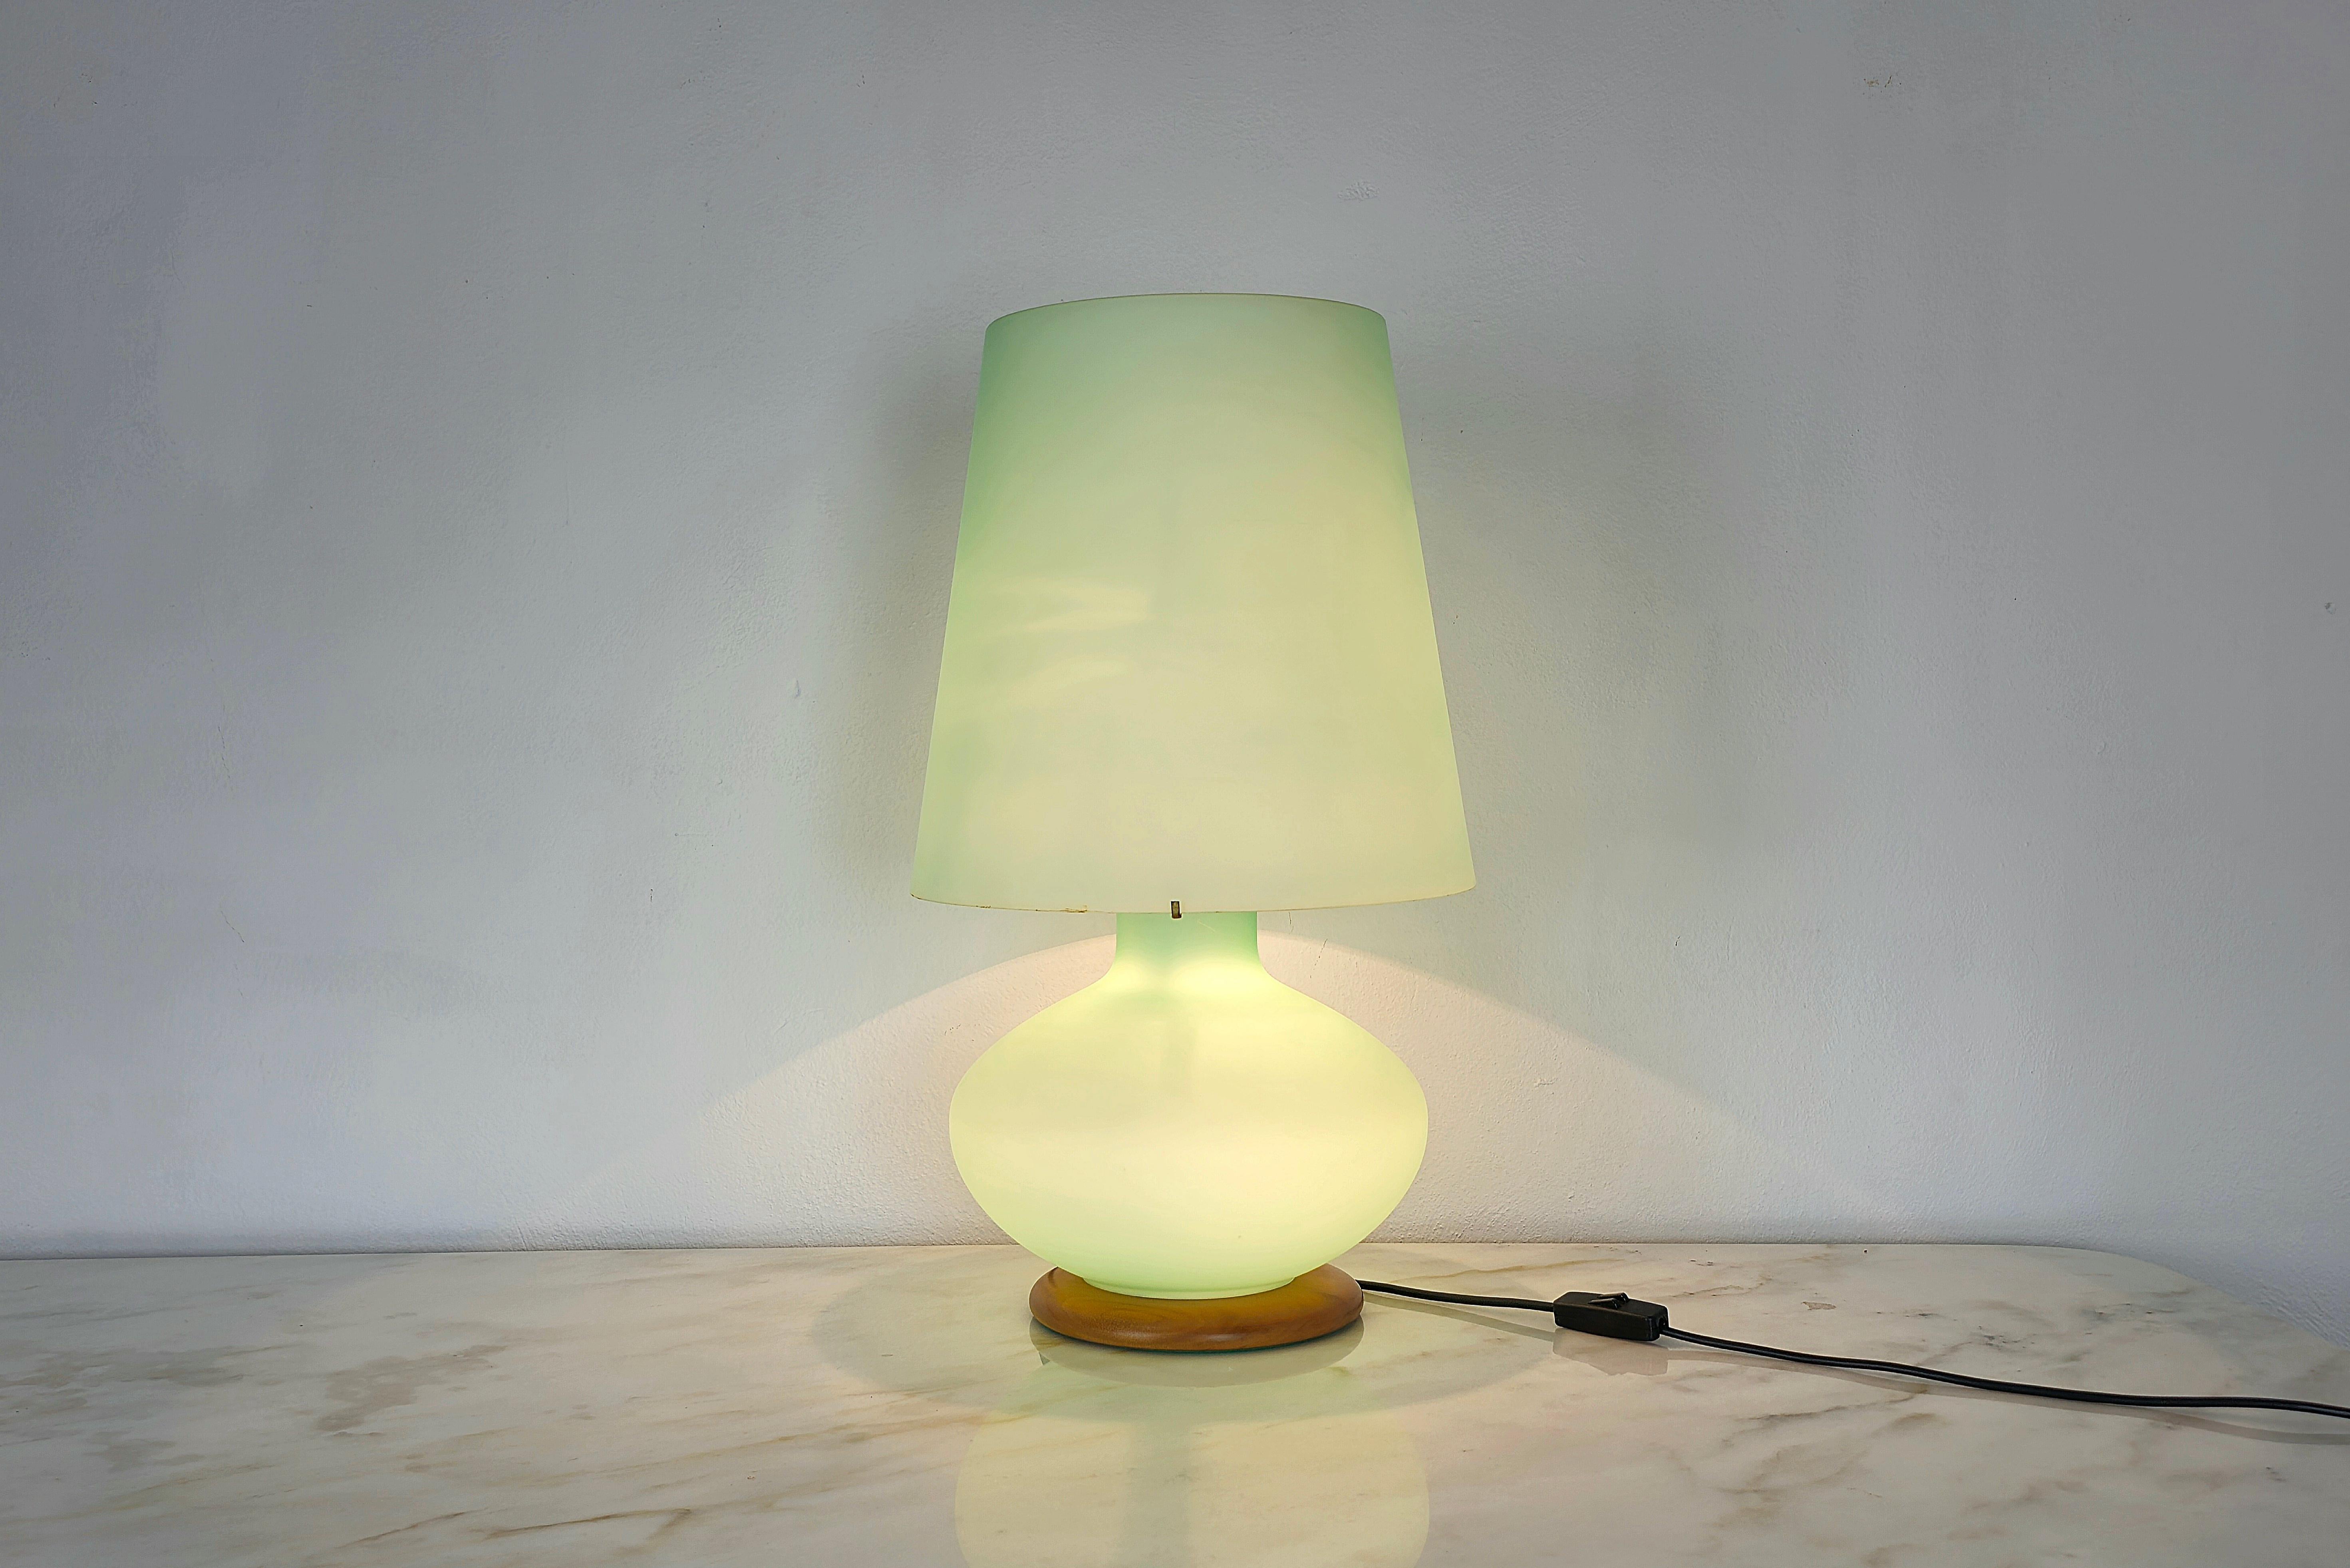 Grande lampe de table en verre de Murano stratifié travaillé à la main de couleur vert aqua avec une base circulaire en bois et des accessoires en métal. La gestion de la lumière peut se faire grâce à l'interrupteur, en alternant les lumières à